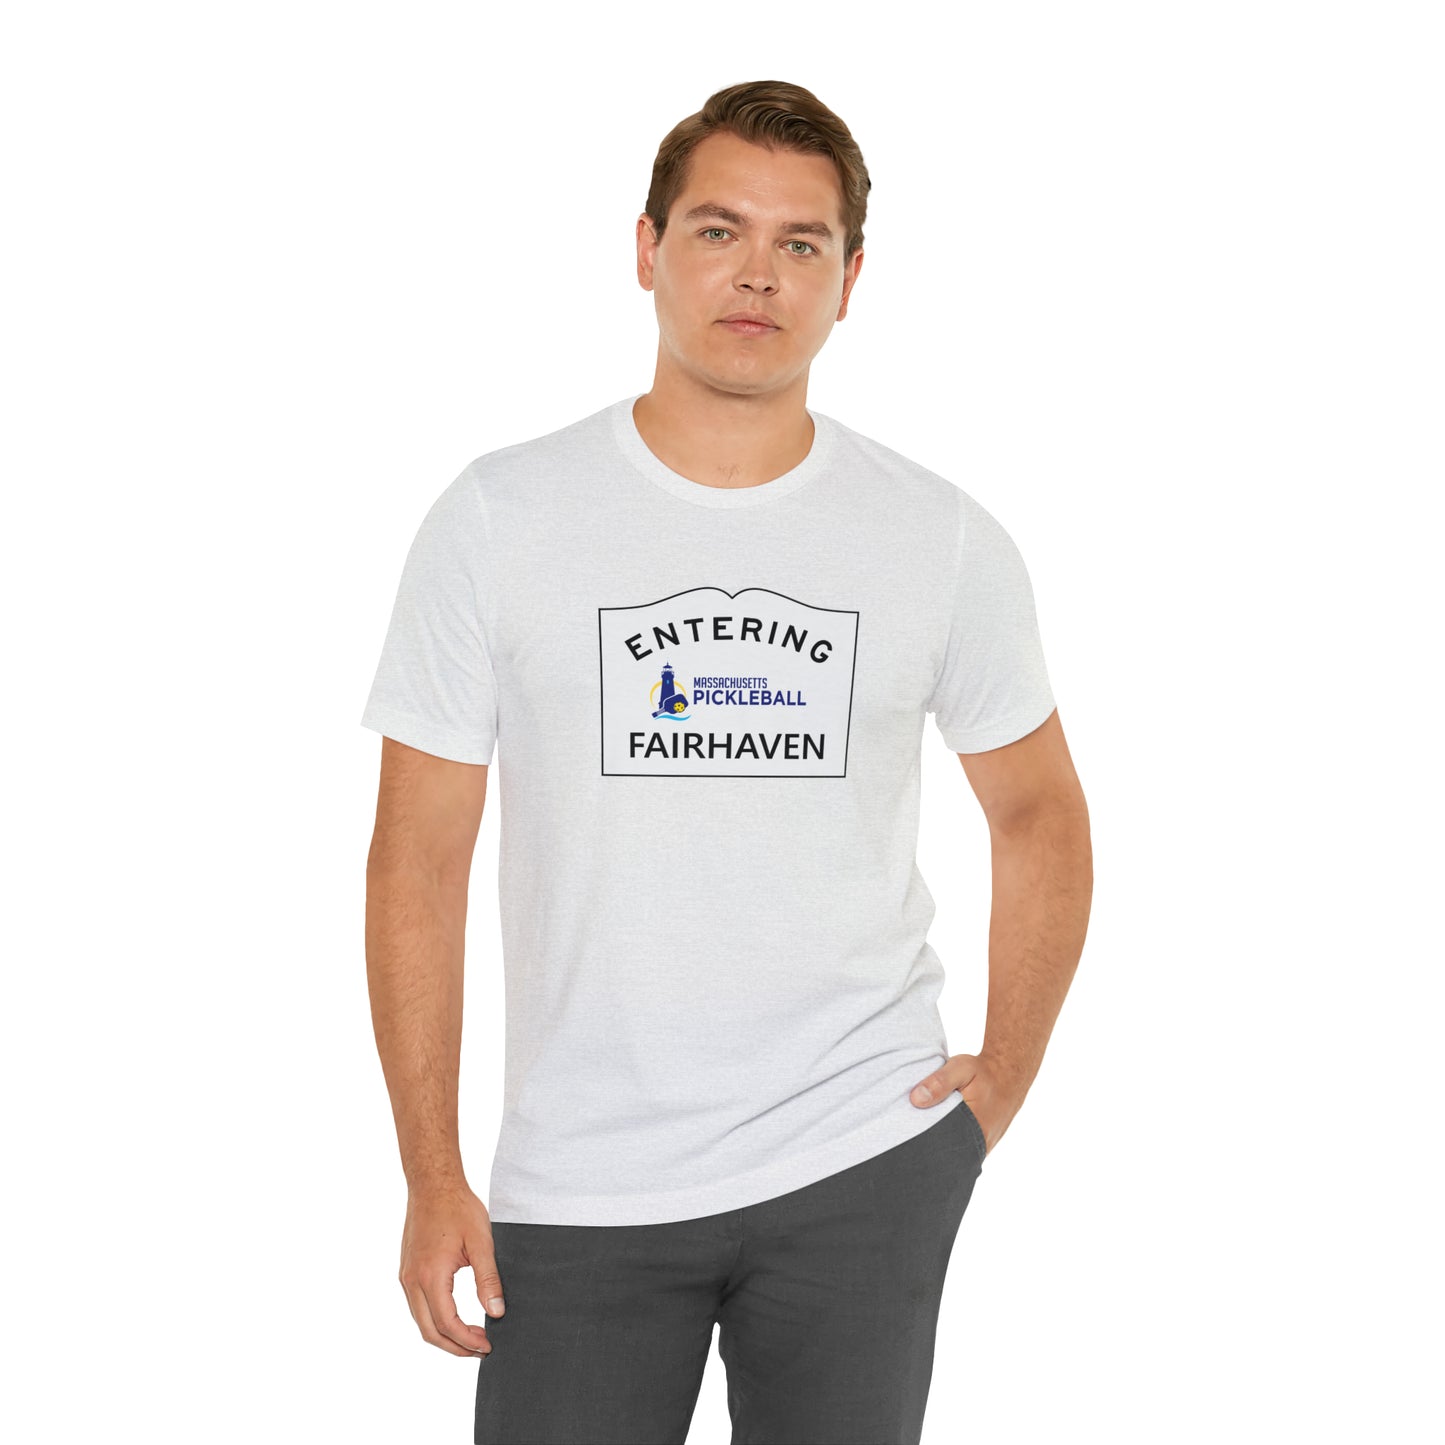 Fairhaven, Mass Pickleball Short Sleeve T-Shirt